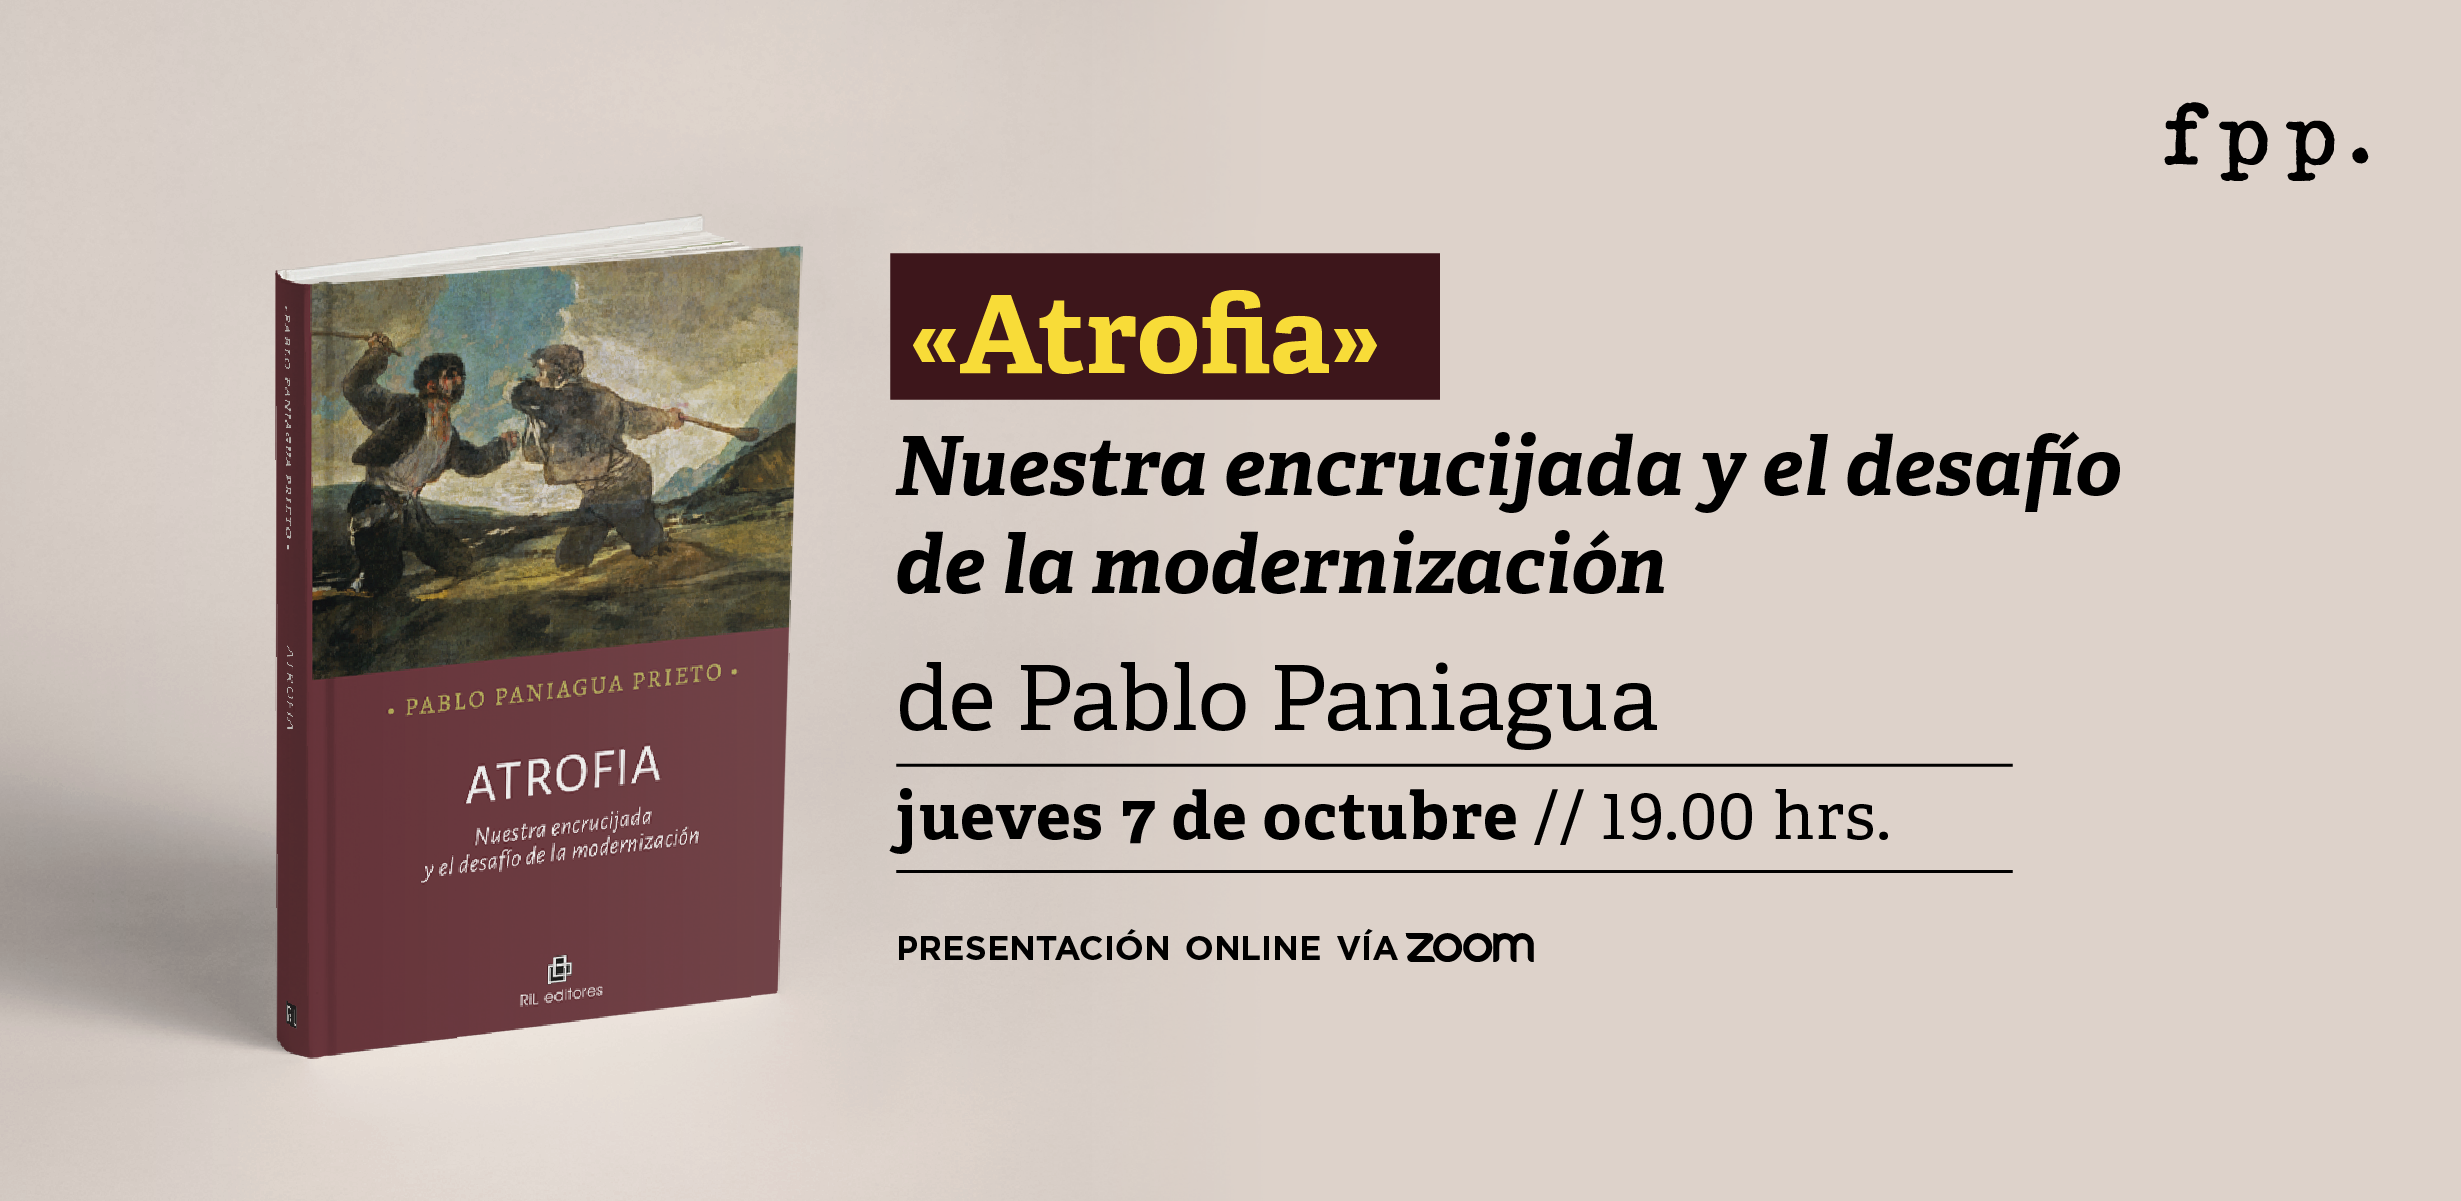 Presentación del libro “Atrofia: nuestra encrucijada y el desafío de la modernización” de Pablo Paniagua